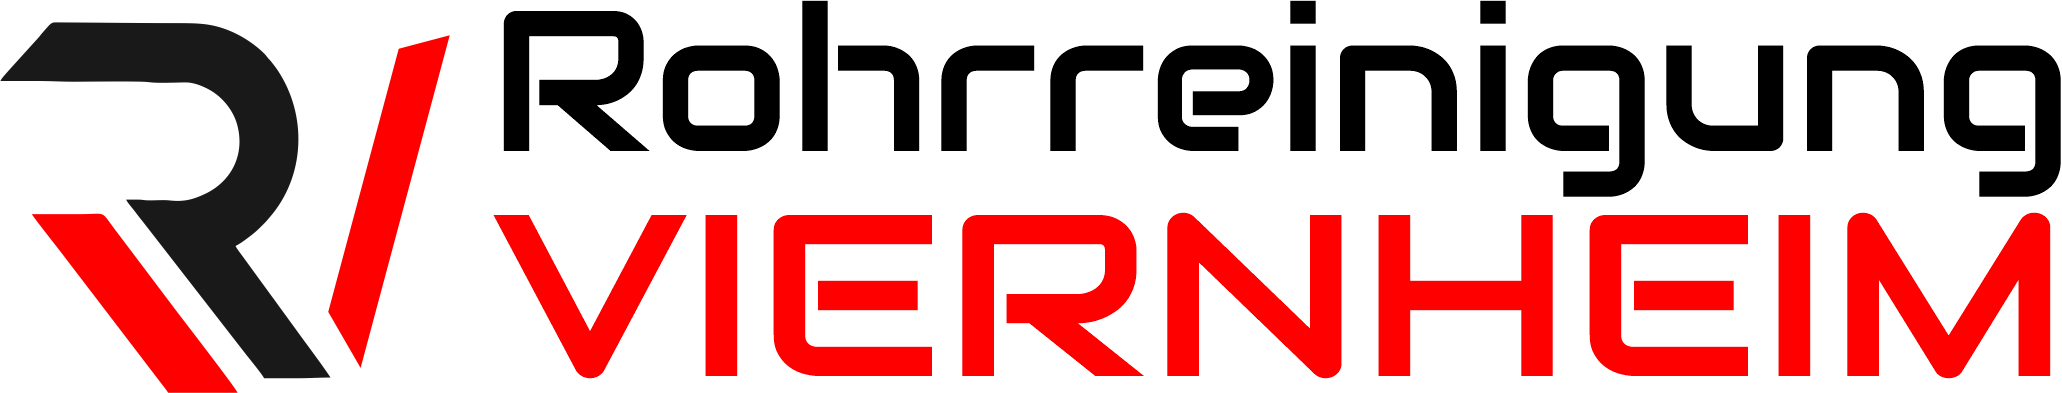 Rohrreinigung Viernheim Logo